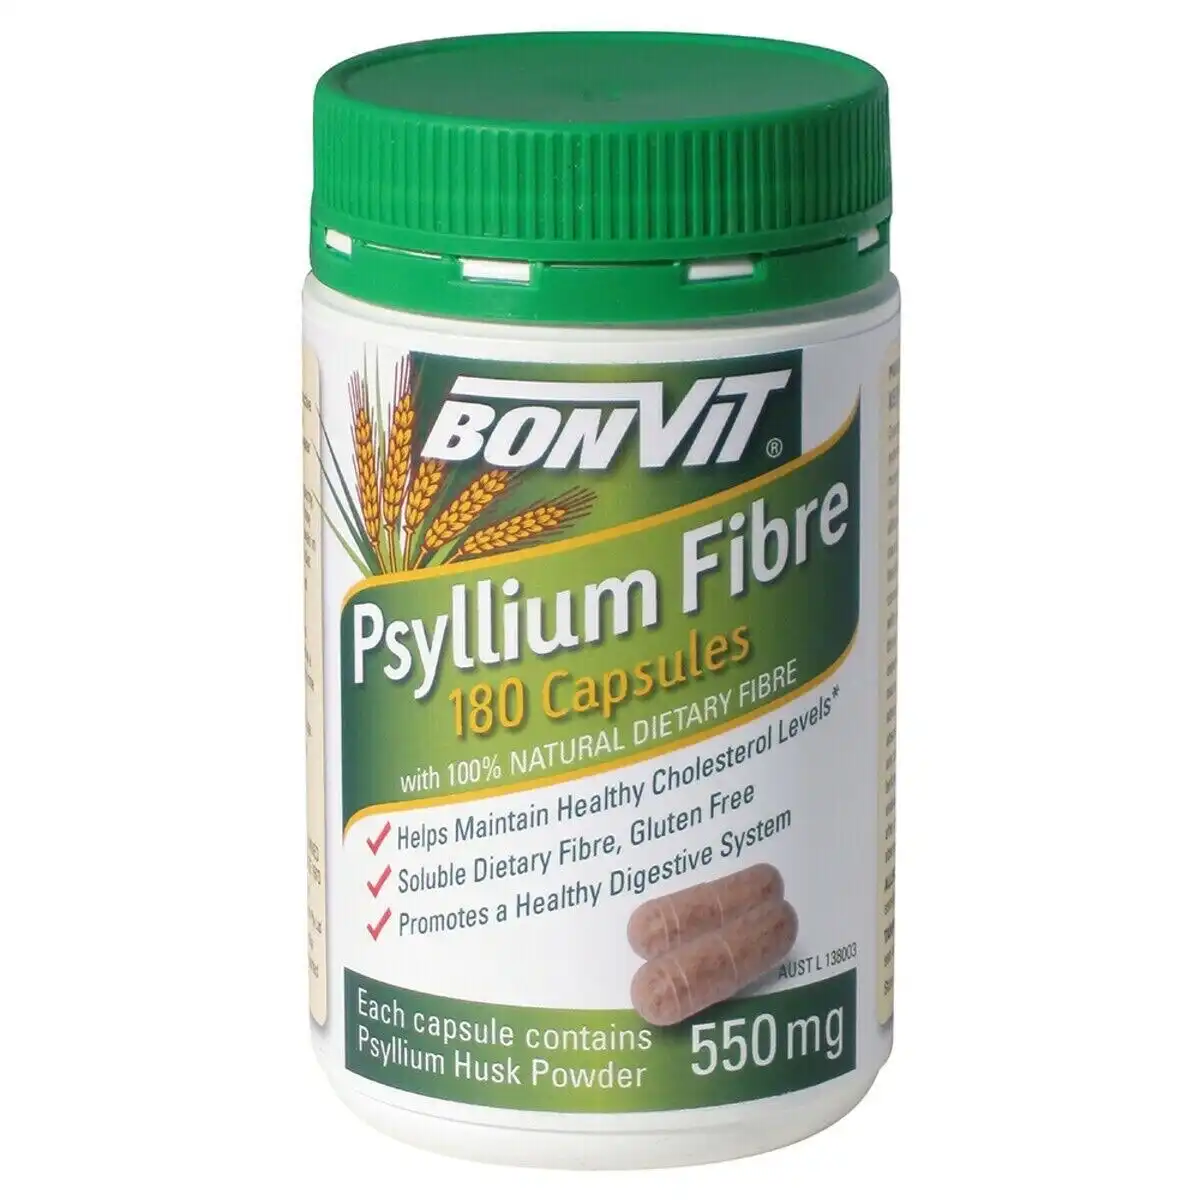 New Bonvit Psyllium Fibre 550mg 180 Capsules